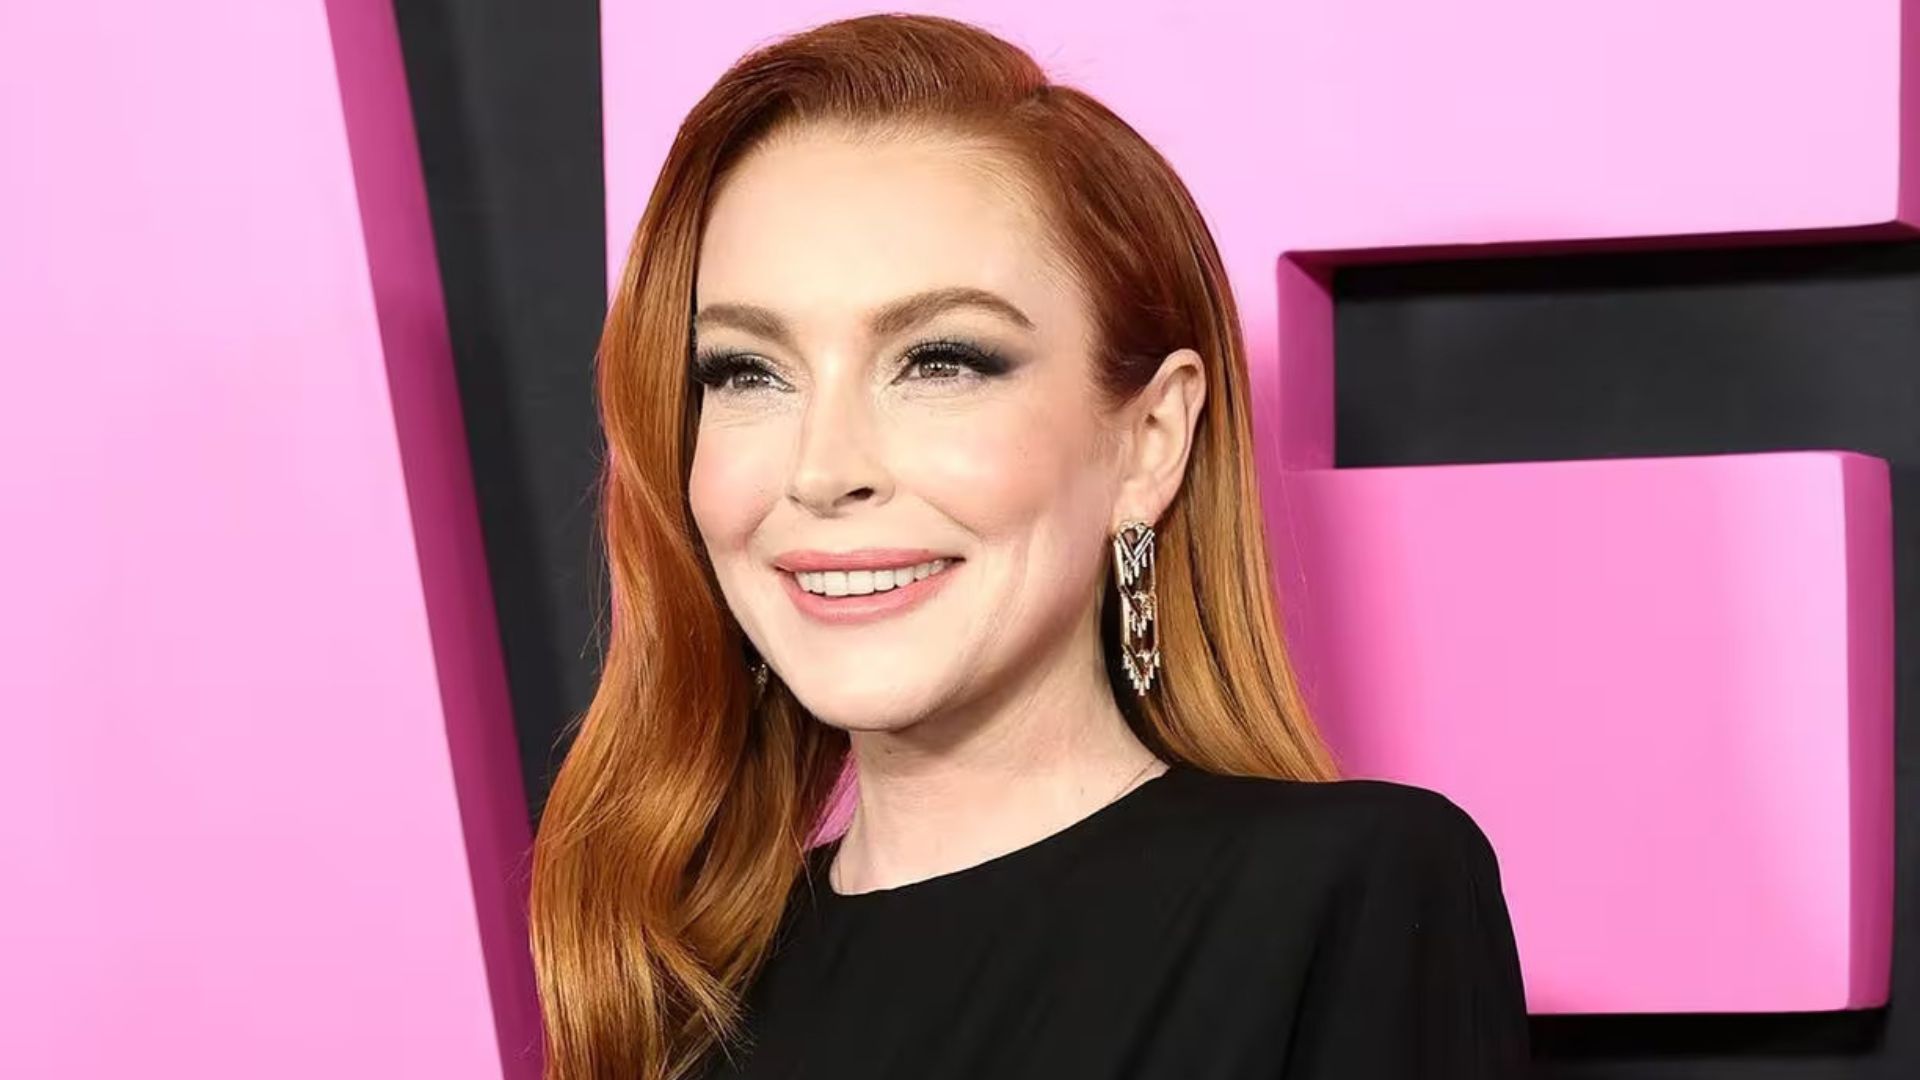 Segundo site, Lindsay Lohan está em negociações para se juntar ao MCU